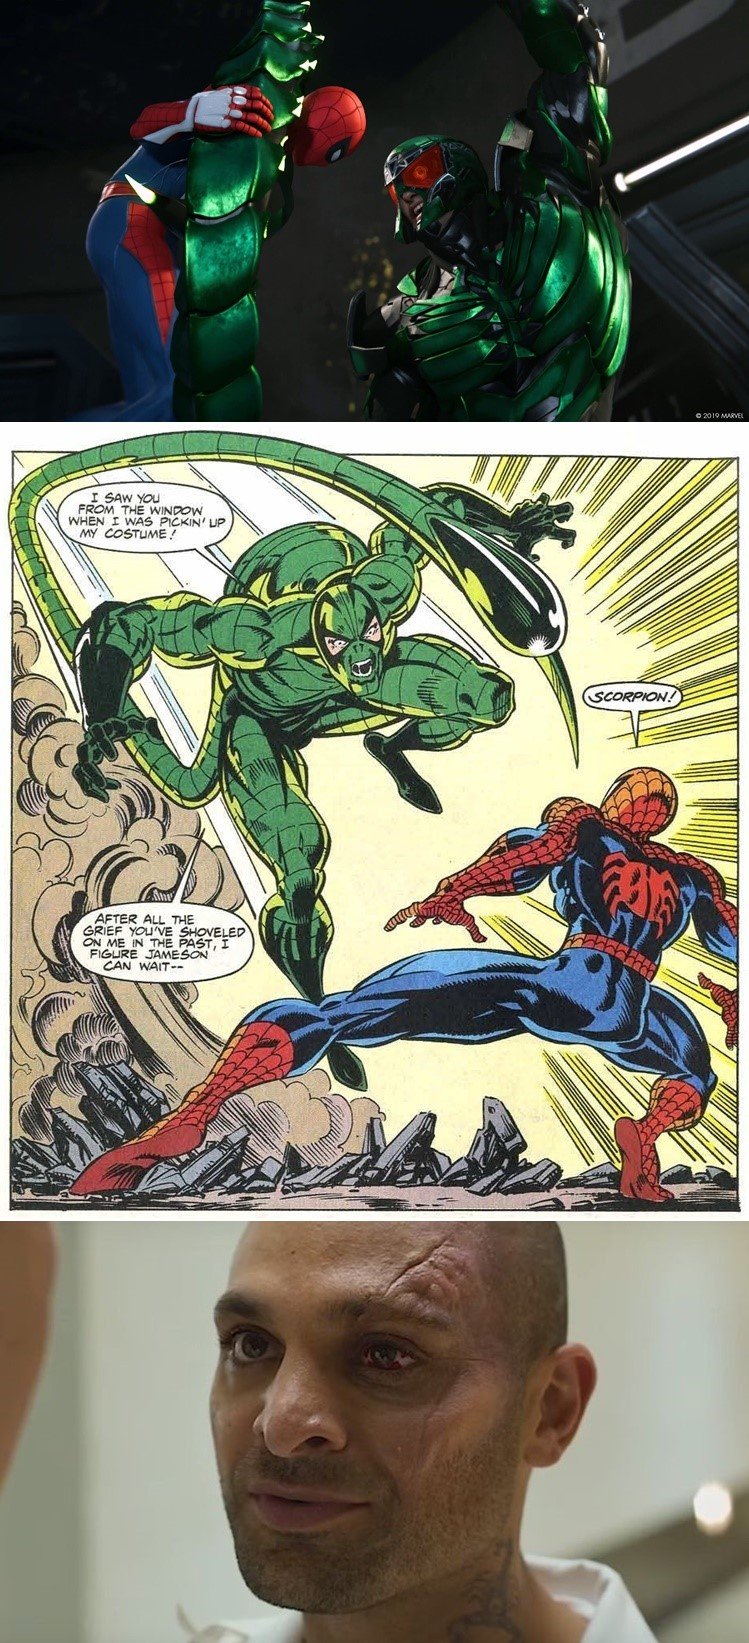 แนะนำศัตรู Spider-Man ในภาพยนตร์เกมการ์ตูนกับความเหมือนที่แตกต่าง